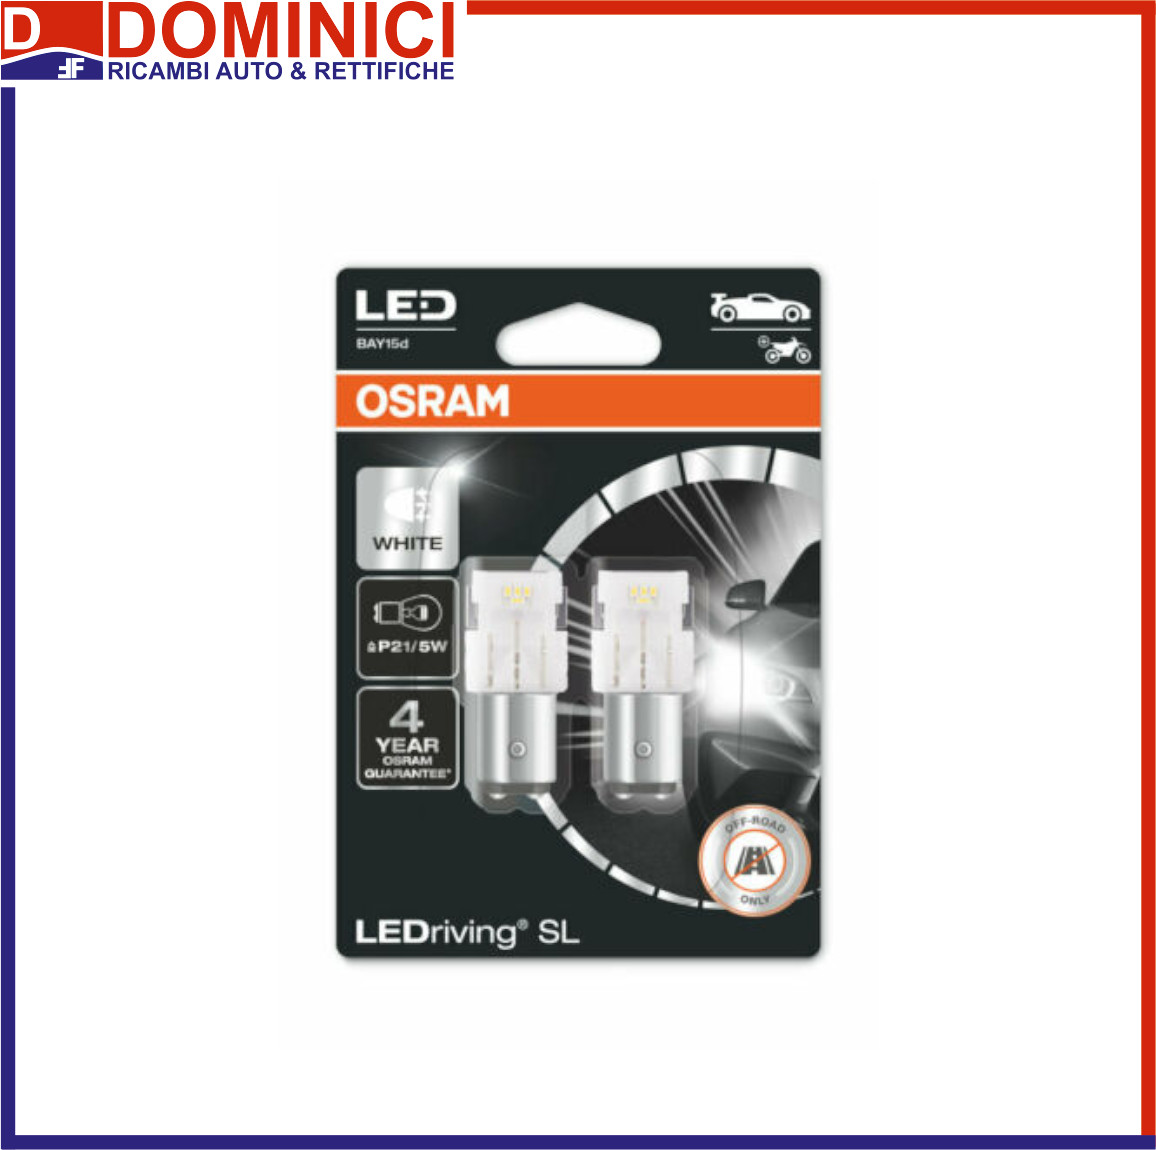 OSRAM - OSRAM LEDriving® SL P21/5W COOL WHITE 6000K 12V BLI2 - OSRAM -  Dominici Ricambi